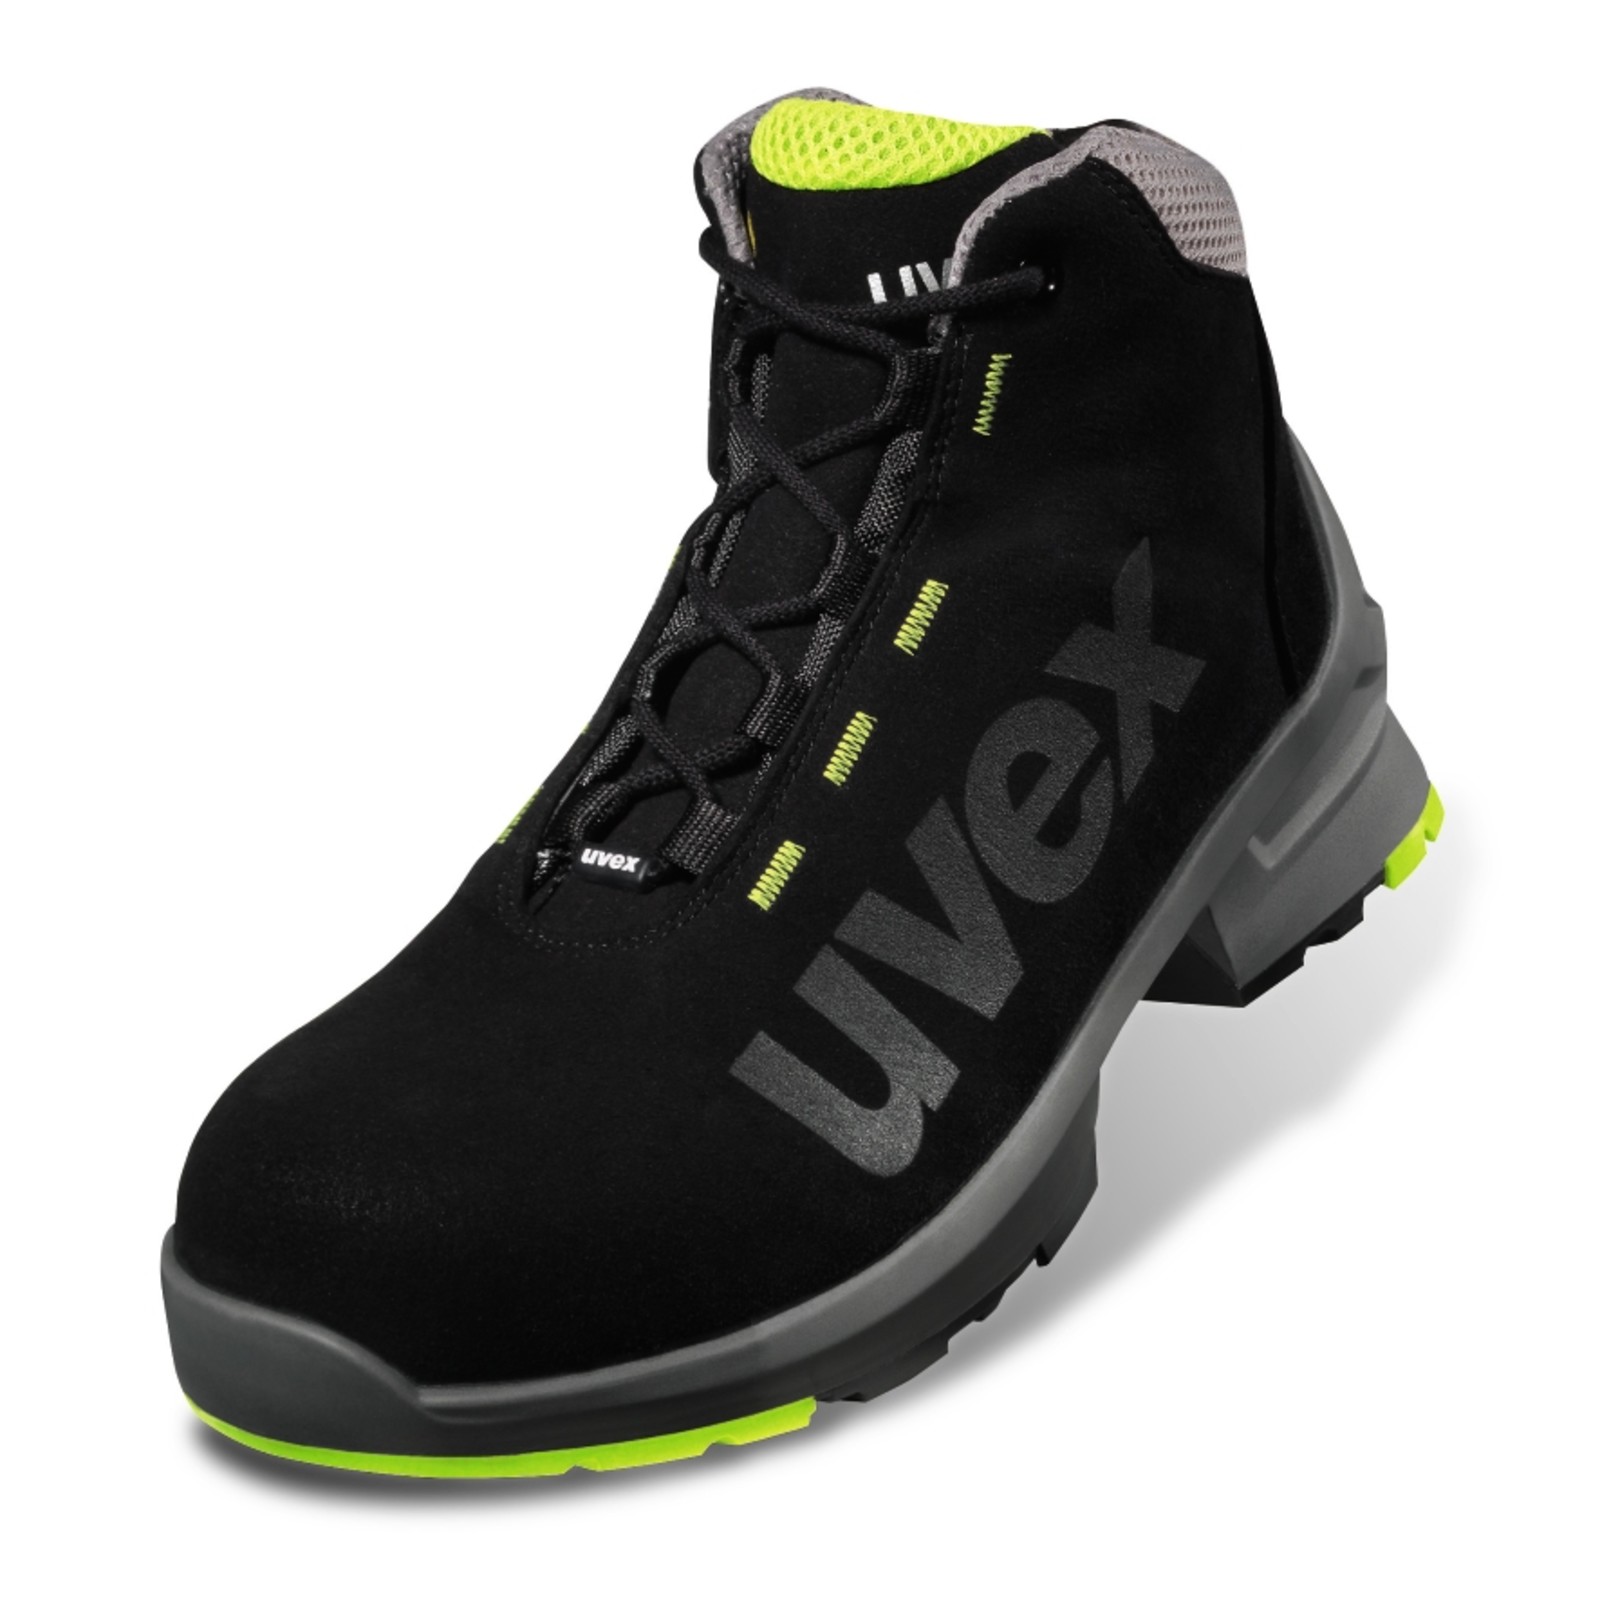 Pracovná obuv Uvex 1 S2 - veľkosť: 50, farba: čierna